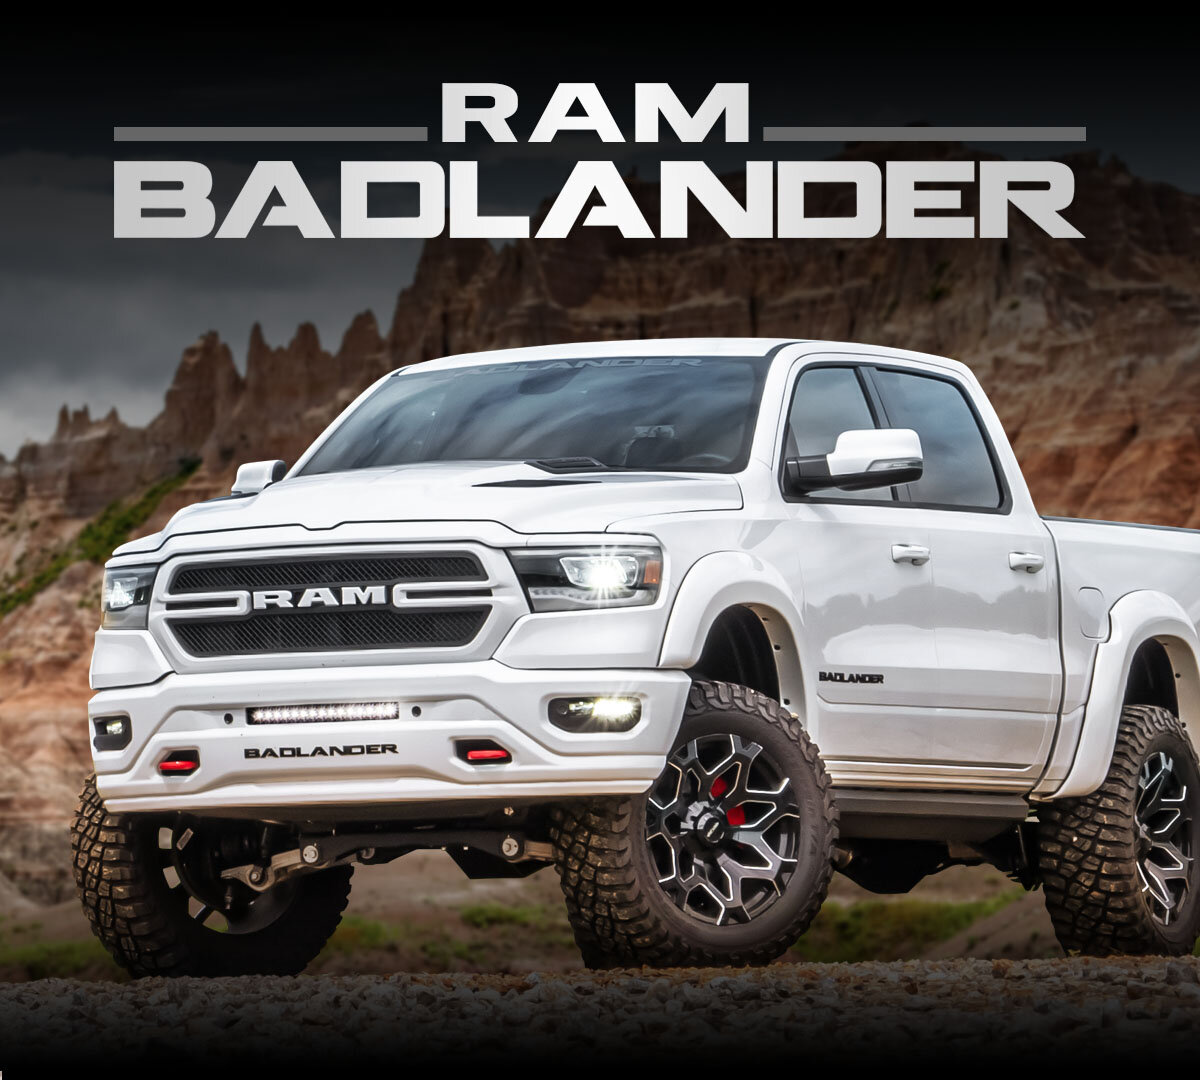 RAM Badlander Truck